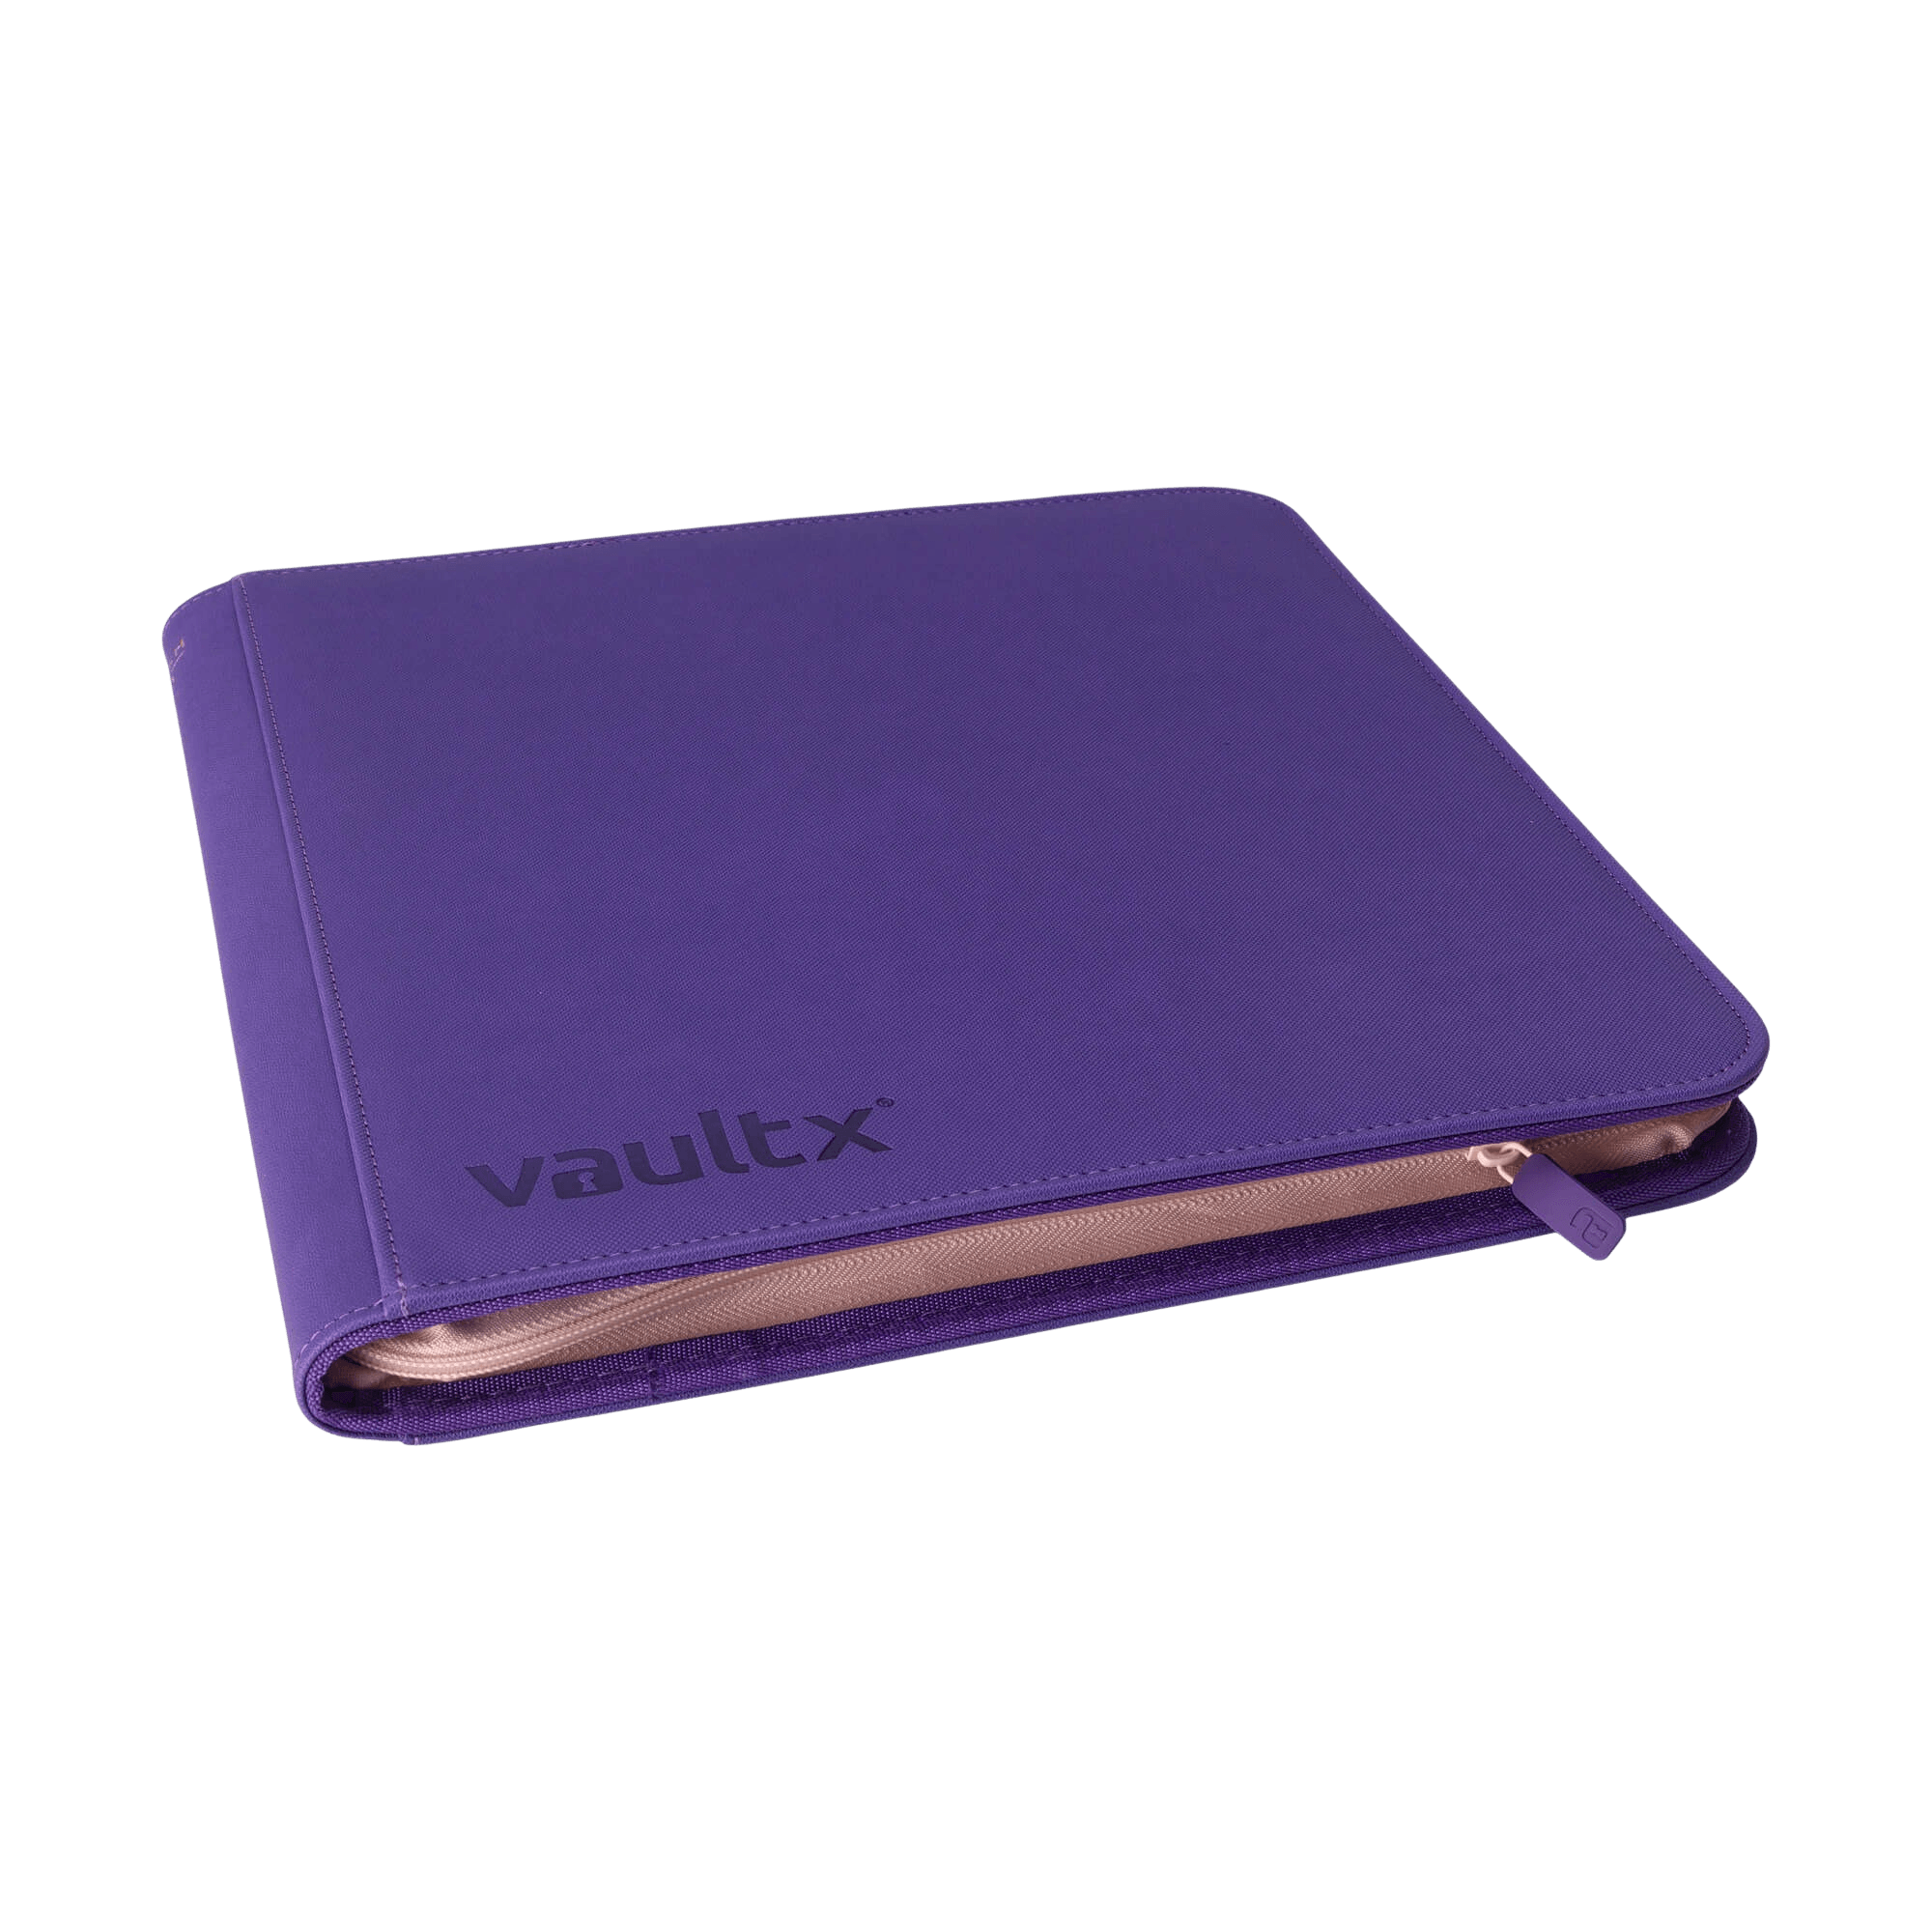 Vault X 12-Pocket Exo-Tec® Zip Binder - SWSH10 - Purple - The Card Vault